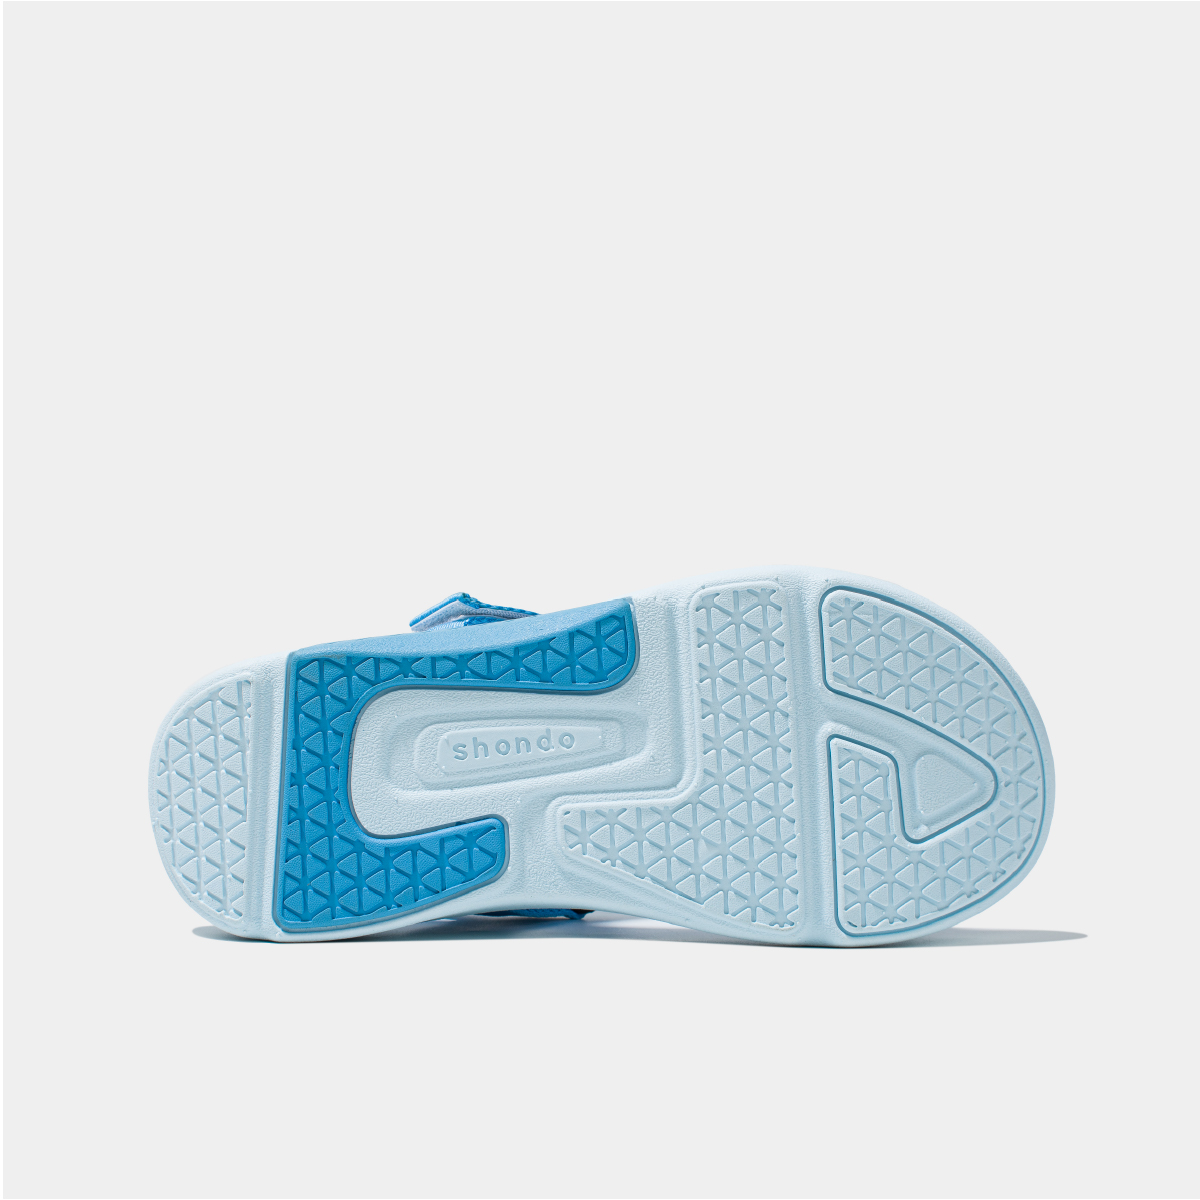 Sandals F7 Racing xanh dương xanh da trời